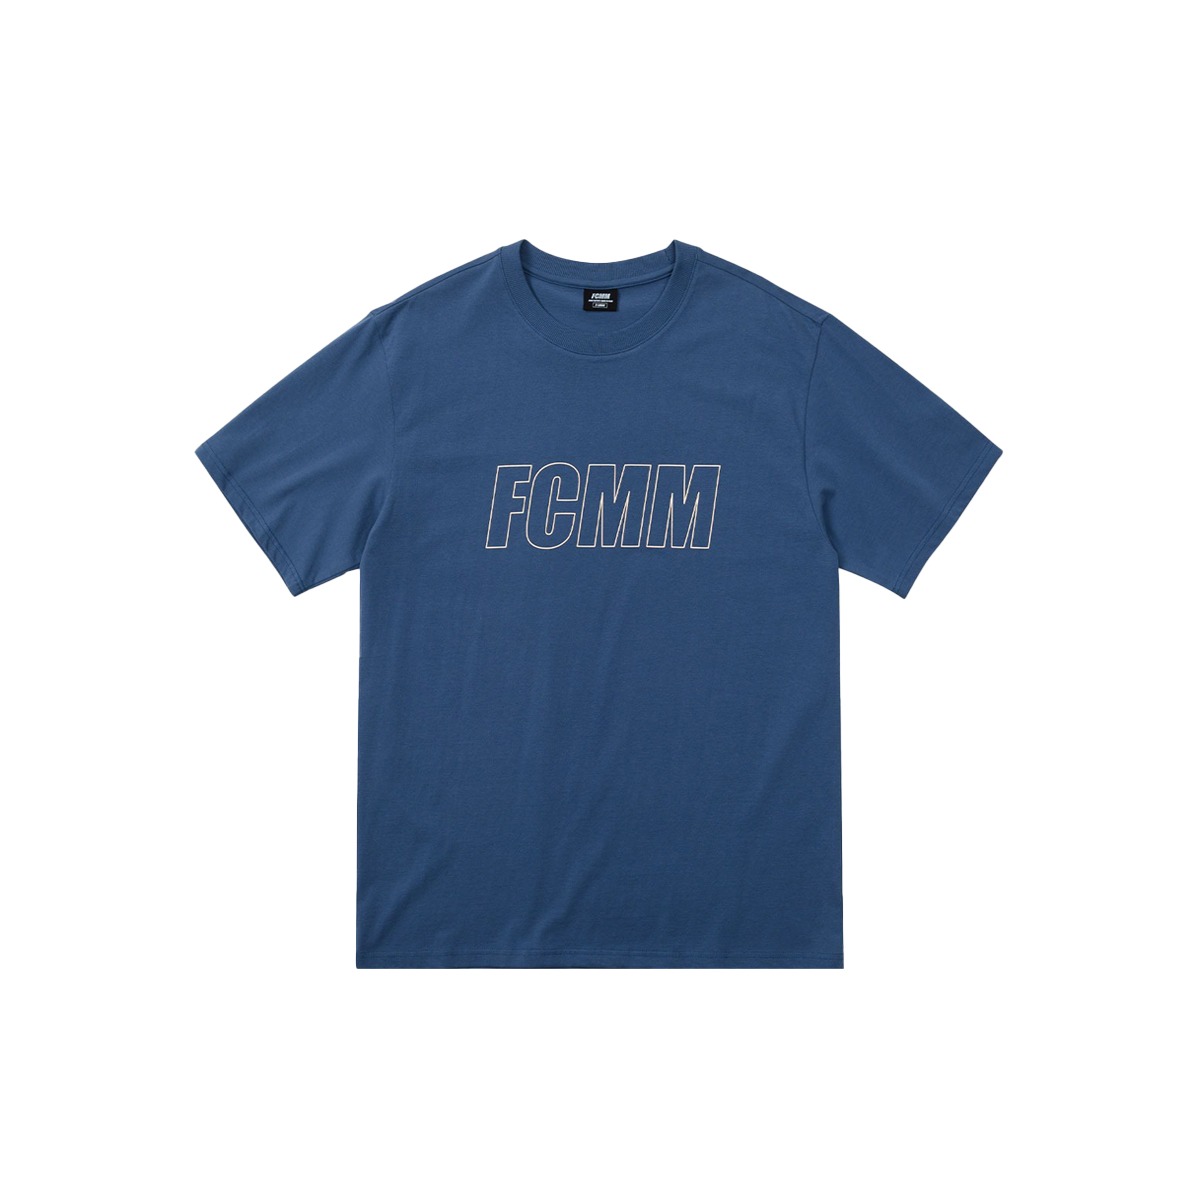 리니어 로고 티셔츠 - 라피스 블루